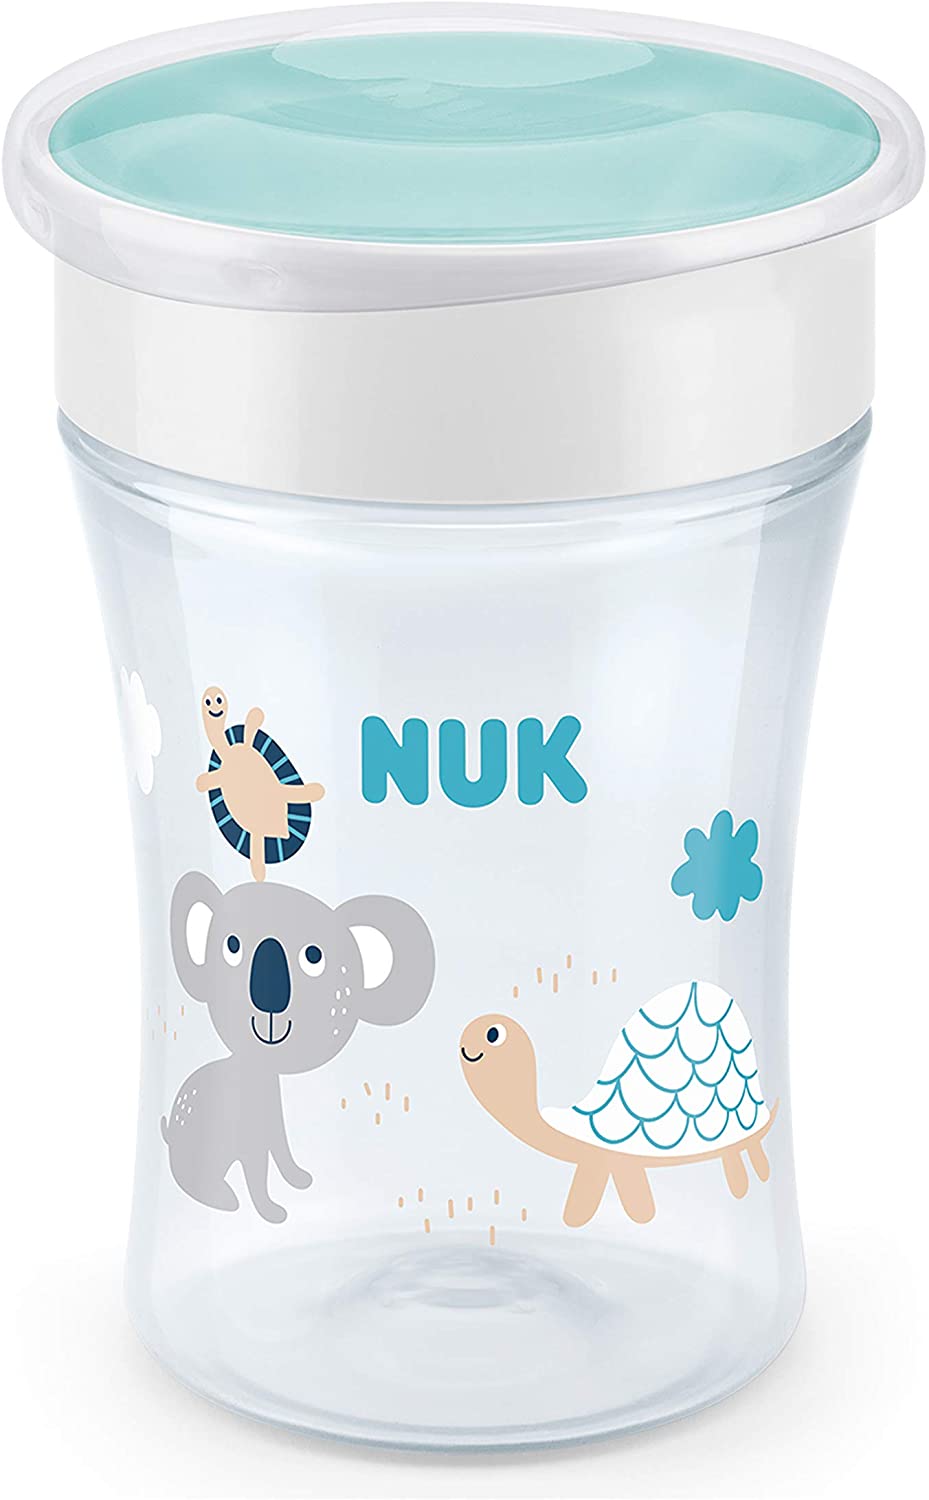 NUK Magic Cup bicchiere antigoccia | Bordo anti-rovesciamento a 360° | 8+ mesi | Senza BPA | 230 ml | Koala (trasparente)